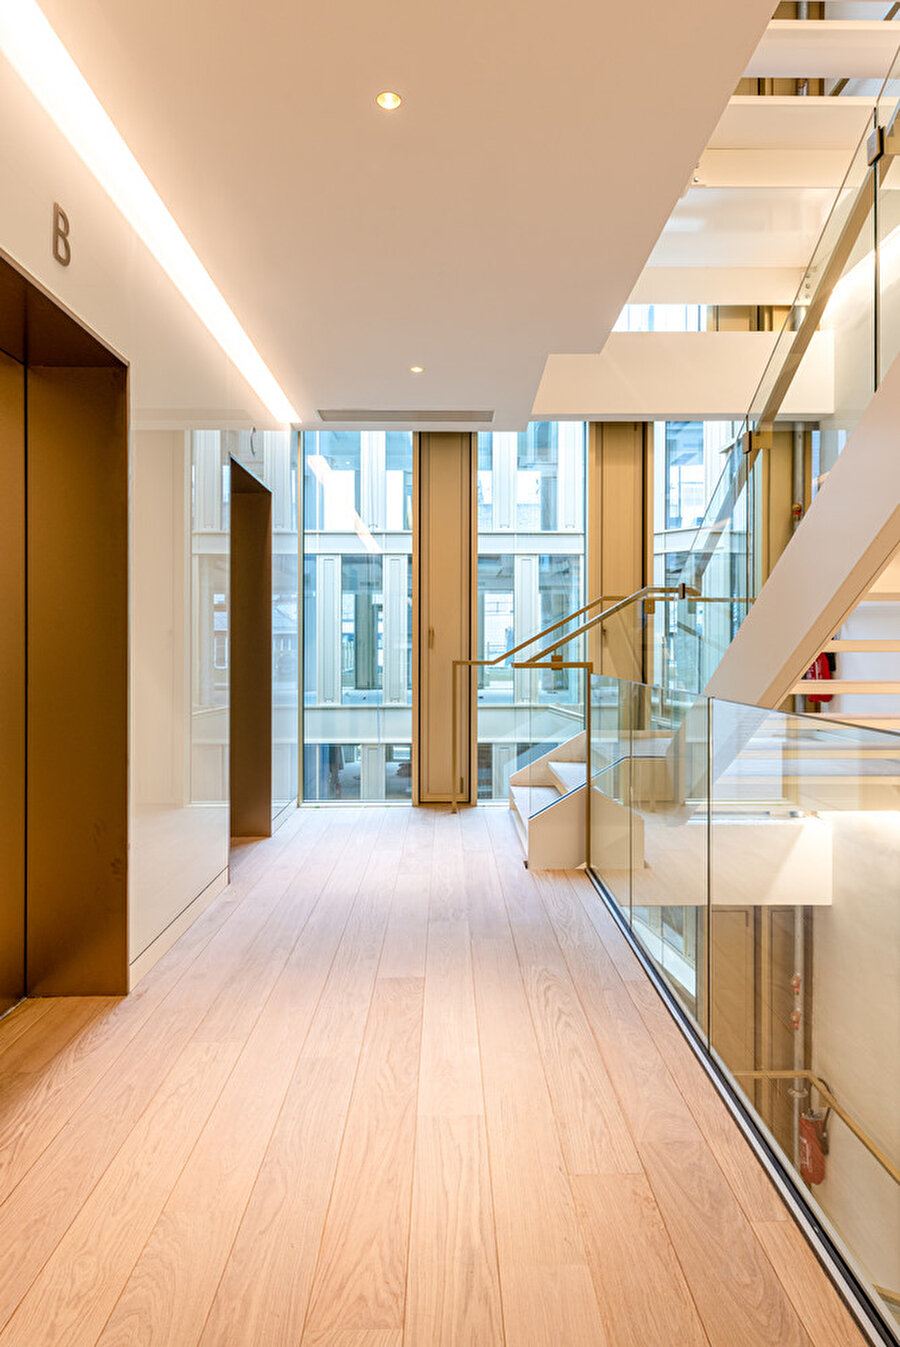 Mimarlık Ajansı Maison Bayard’ı Nexity ve LaSalle Investment Management adına yeniliyor.